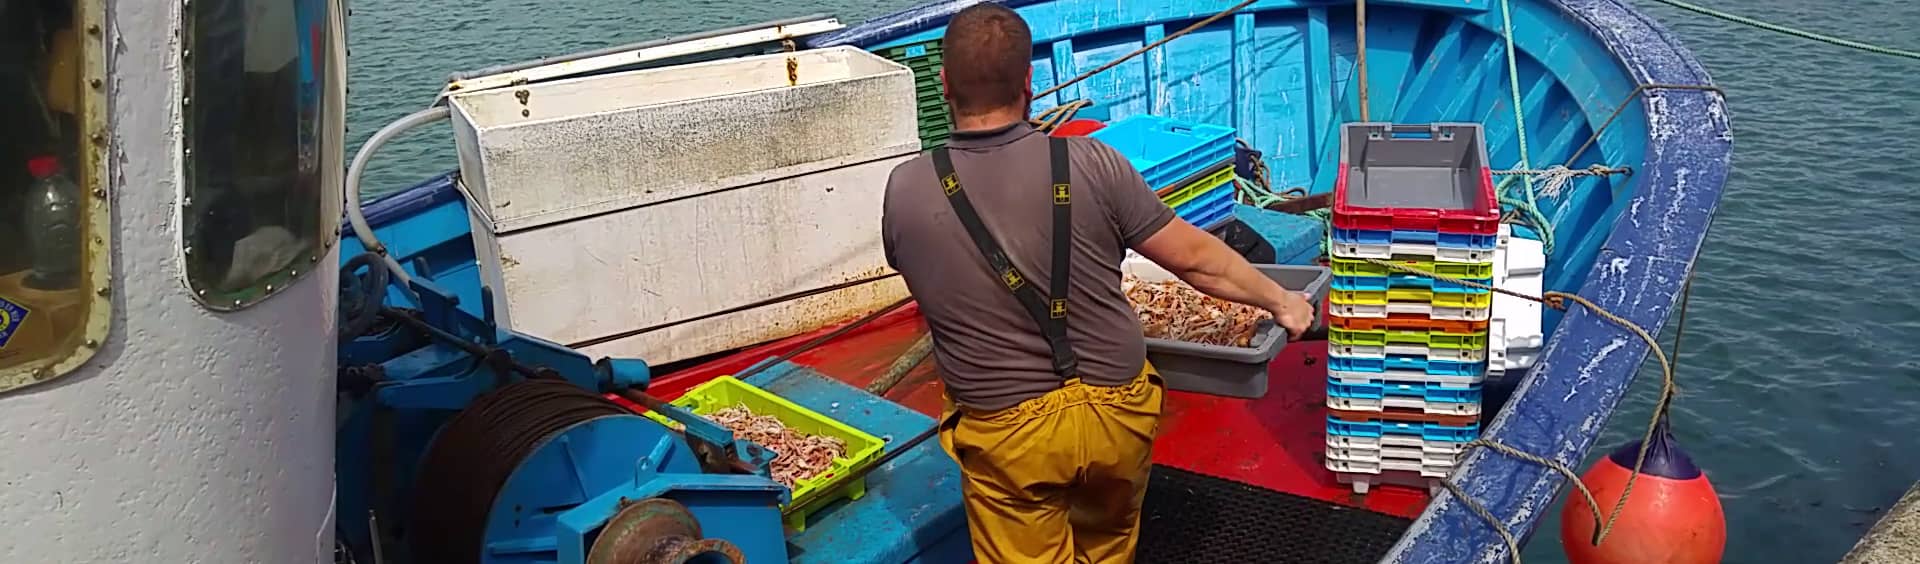 vente de langoustines au port du belon